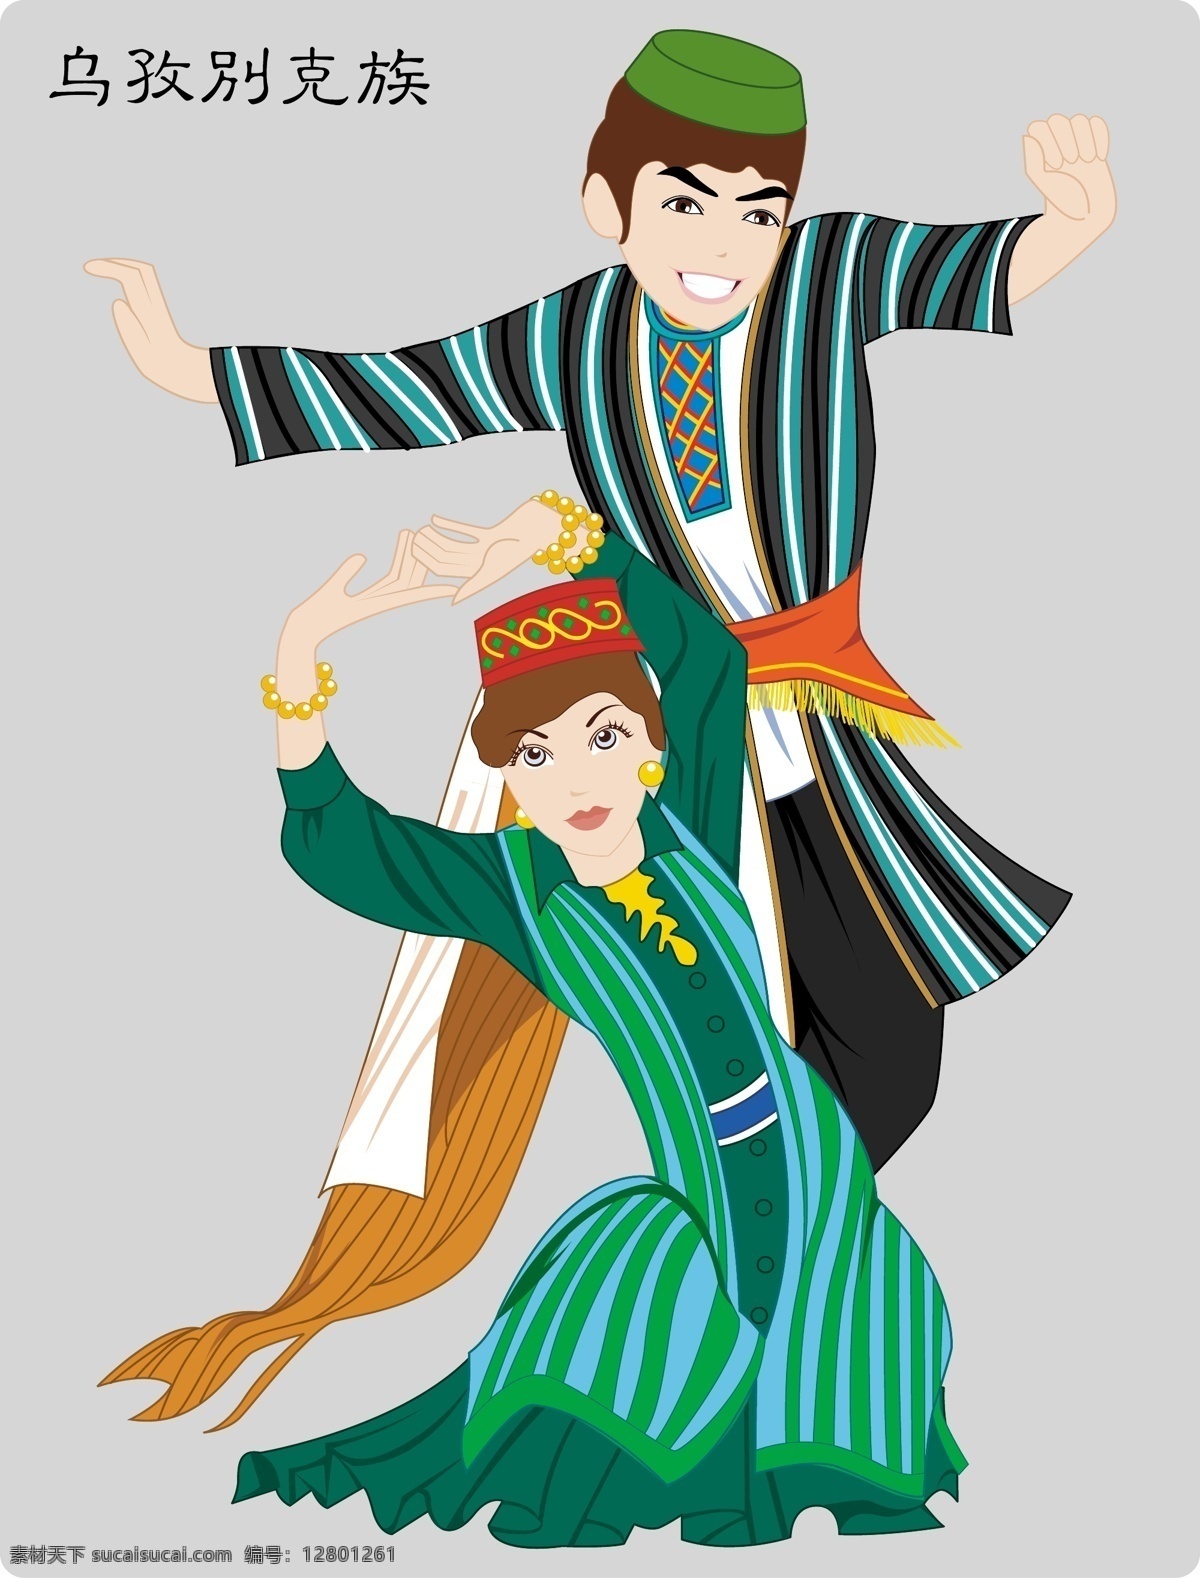 乌孜别克族 五十六个民族 民族服饰 民族矢量图 矢量人物 其他人物 矢量图库